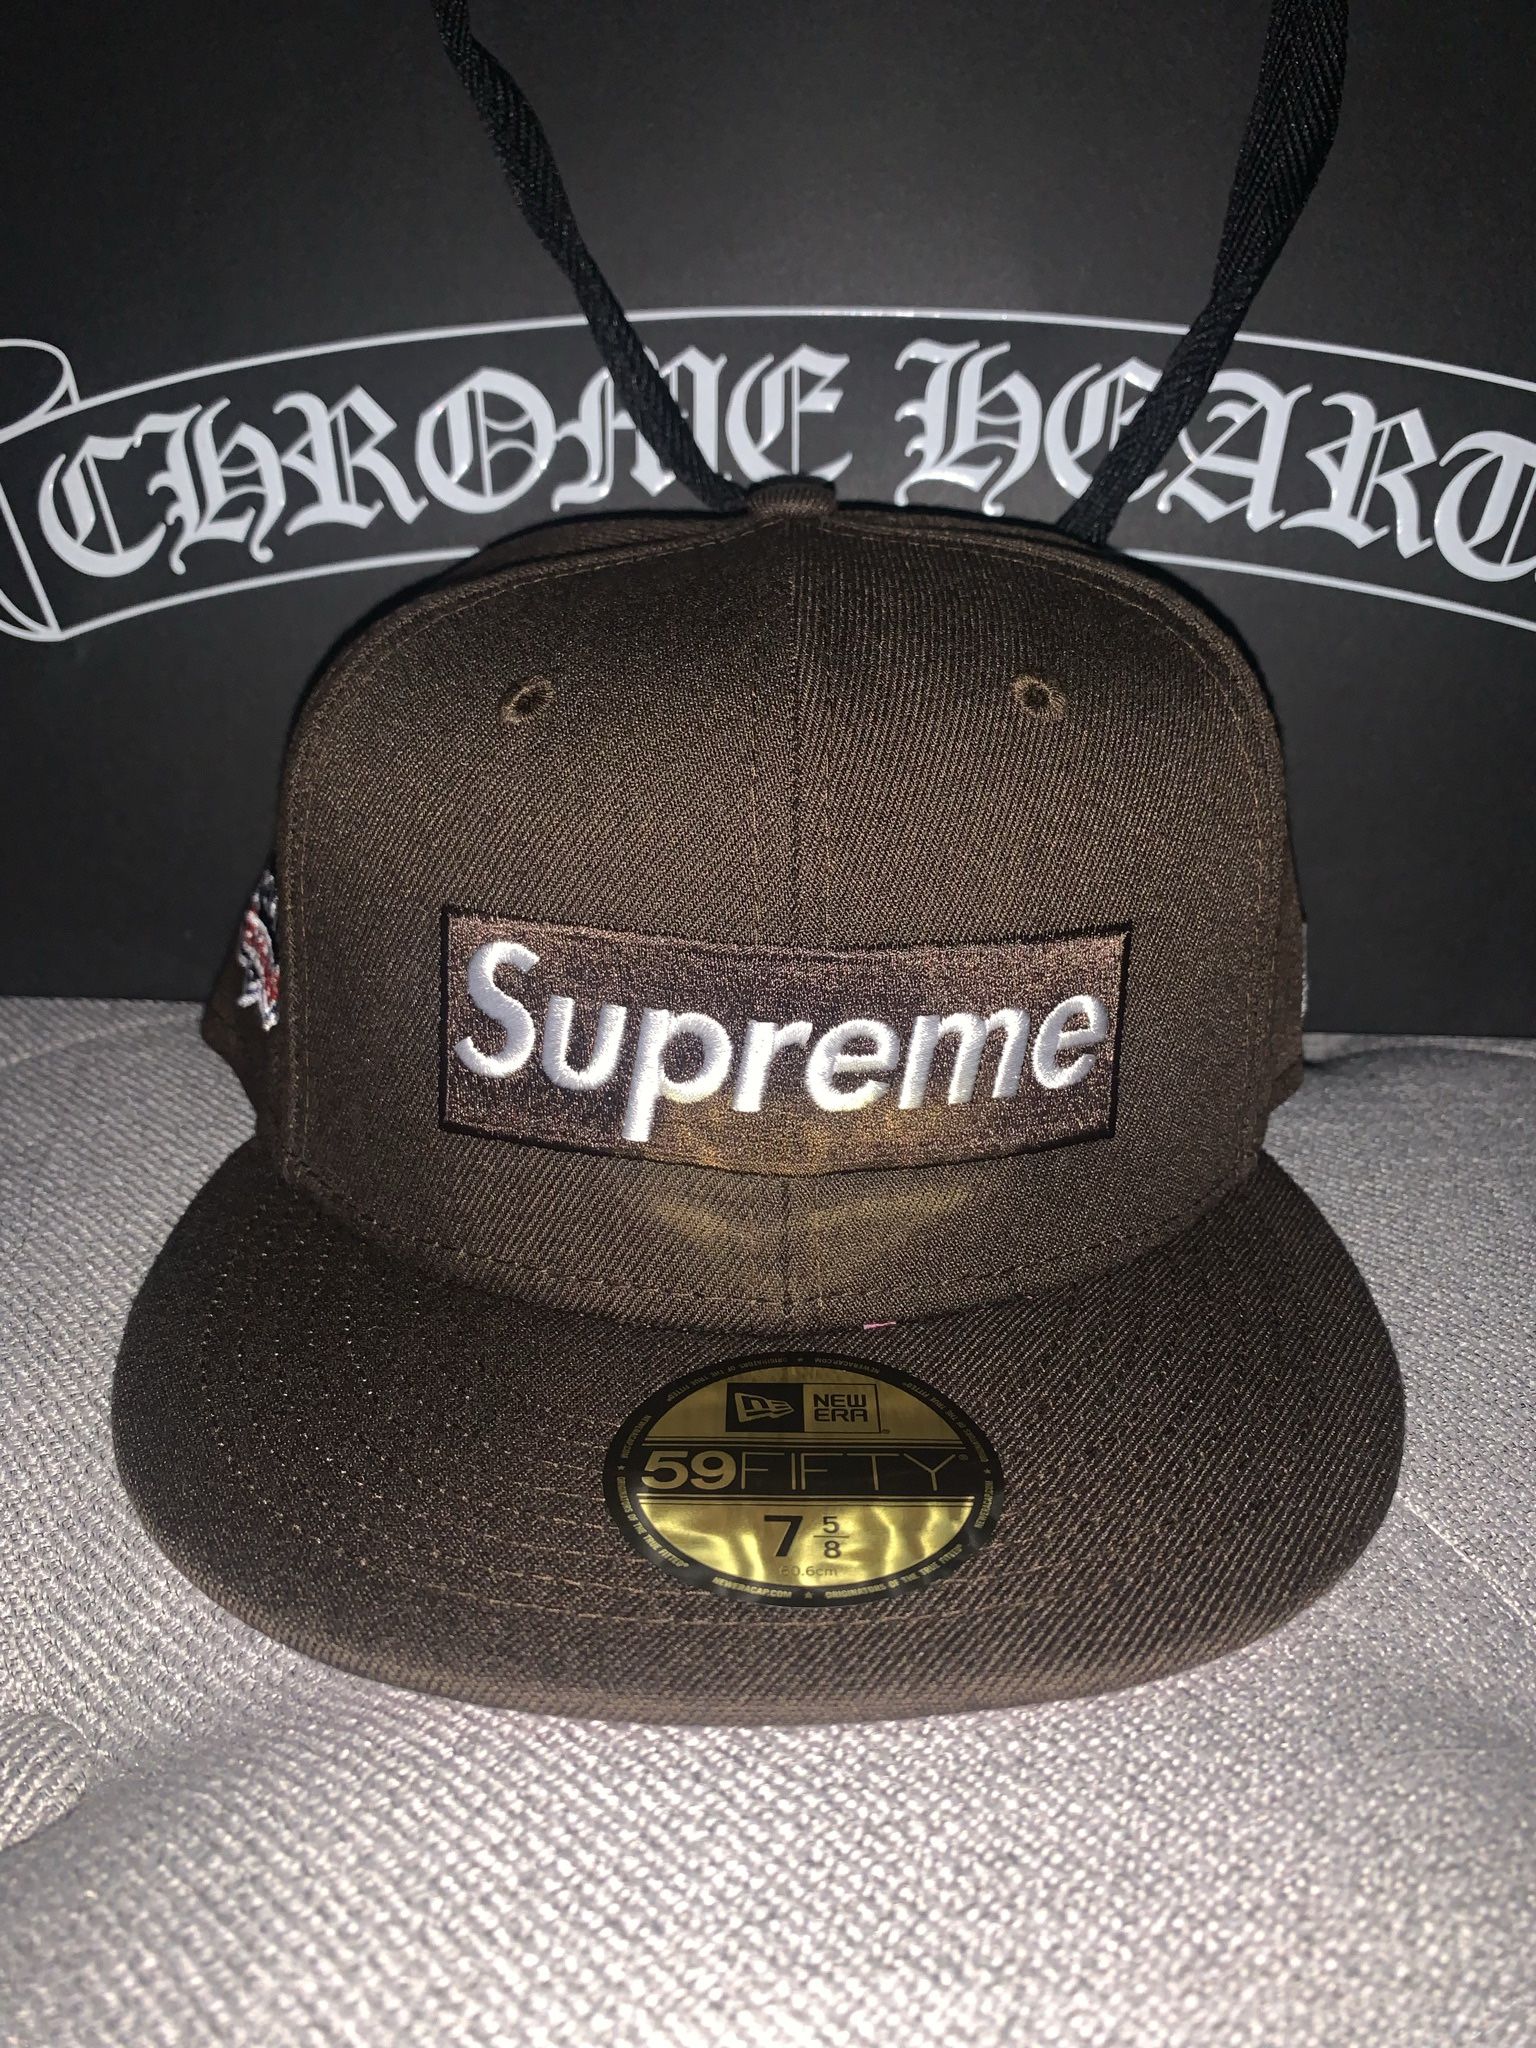 Supreme New Era No Comp Brown Hat Size 7 5/8